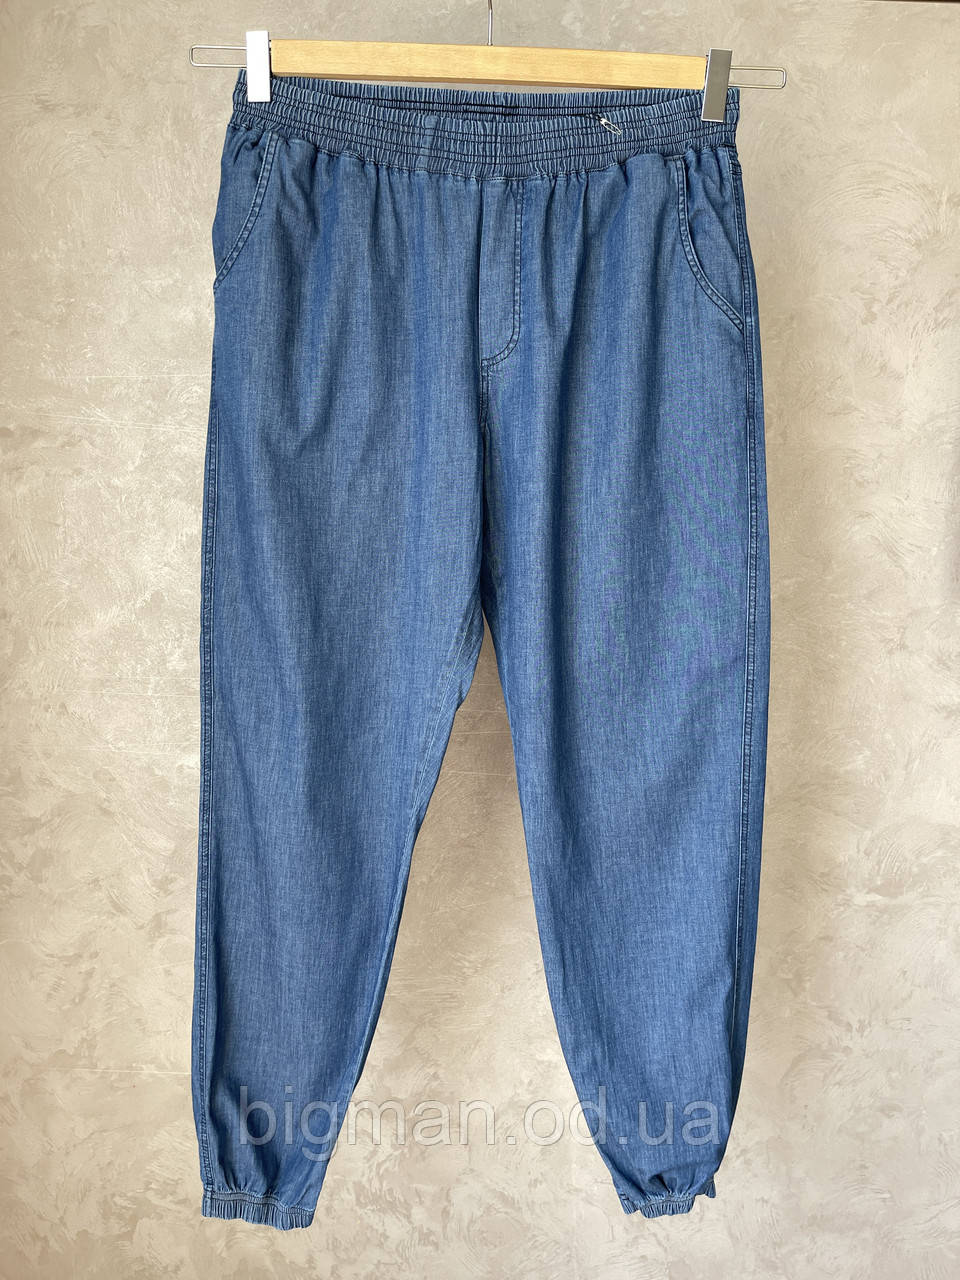 Чоловічі літні джинси з манжетами на гумці Olser розміру великого батального розміру Туреччина